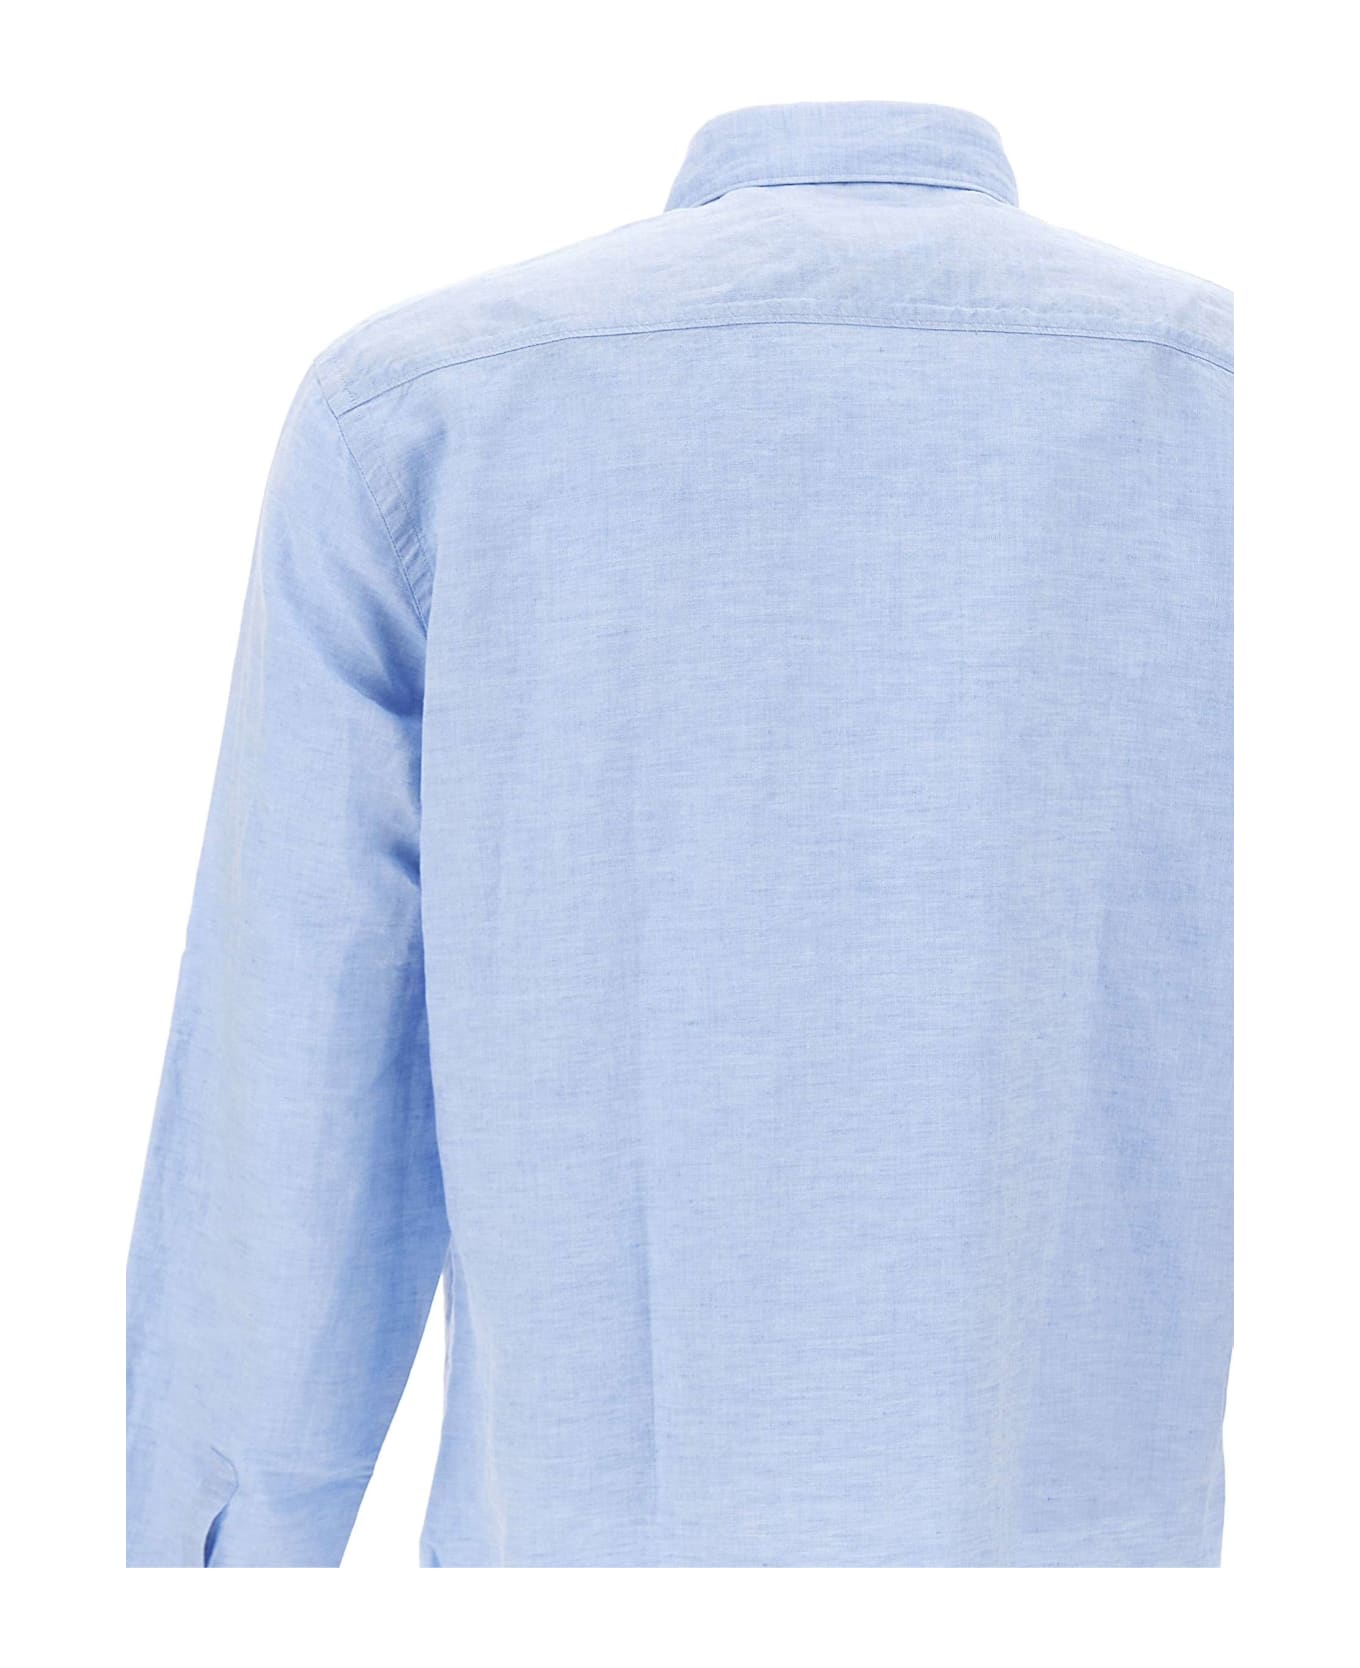 Hugo Boss "c-hal-kent" Cotton And Linen Shirt - BLUE